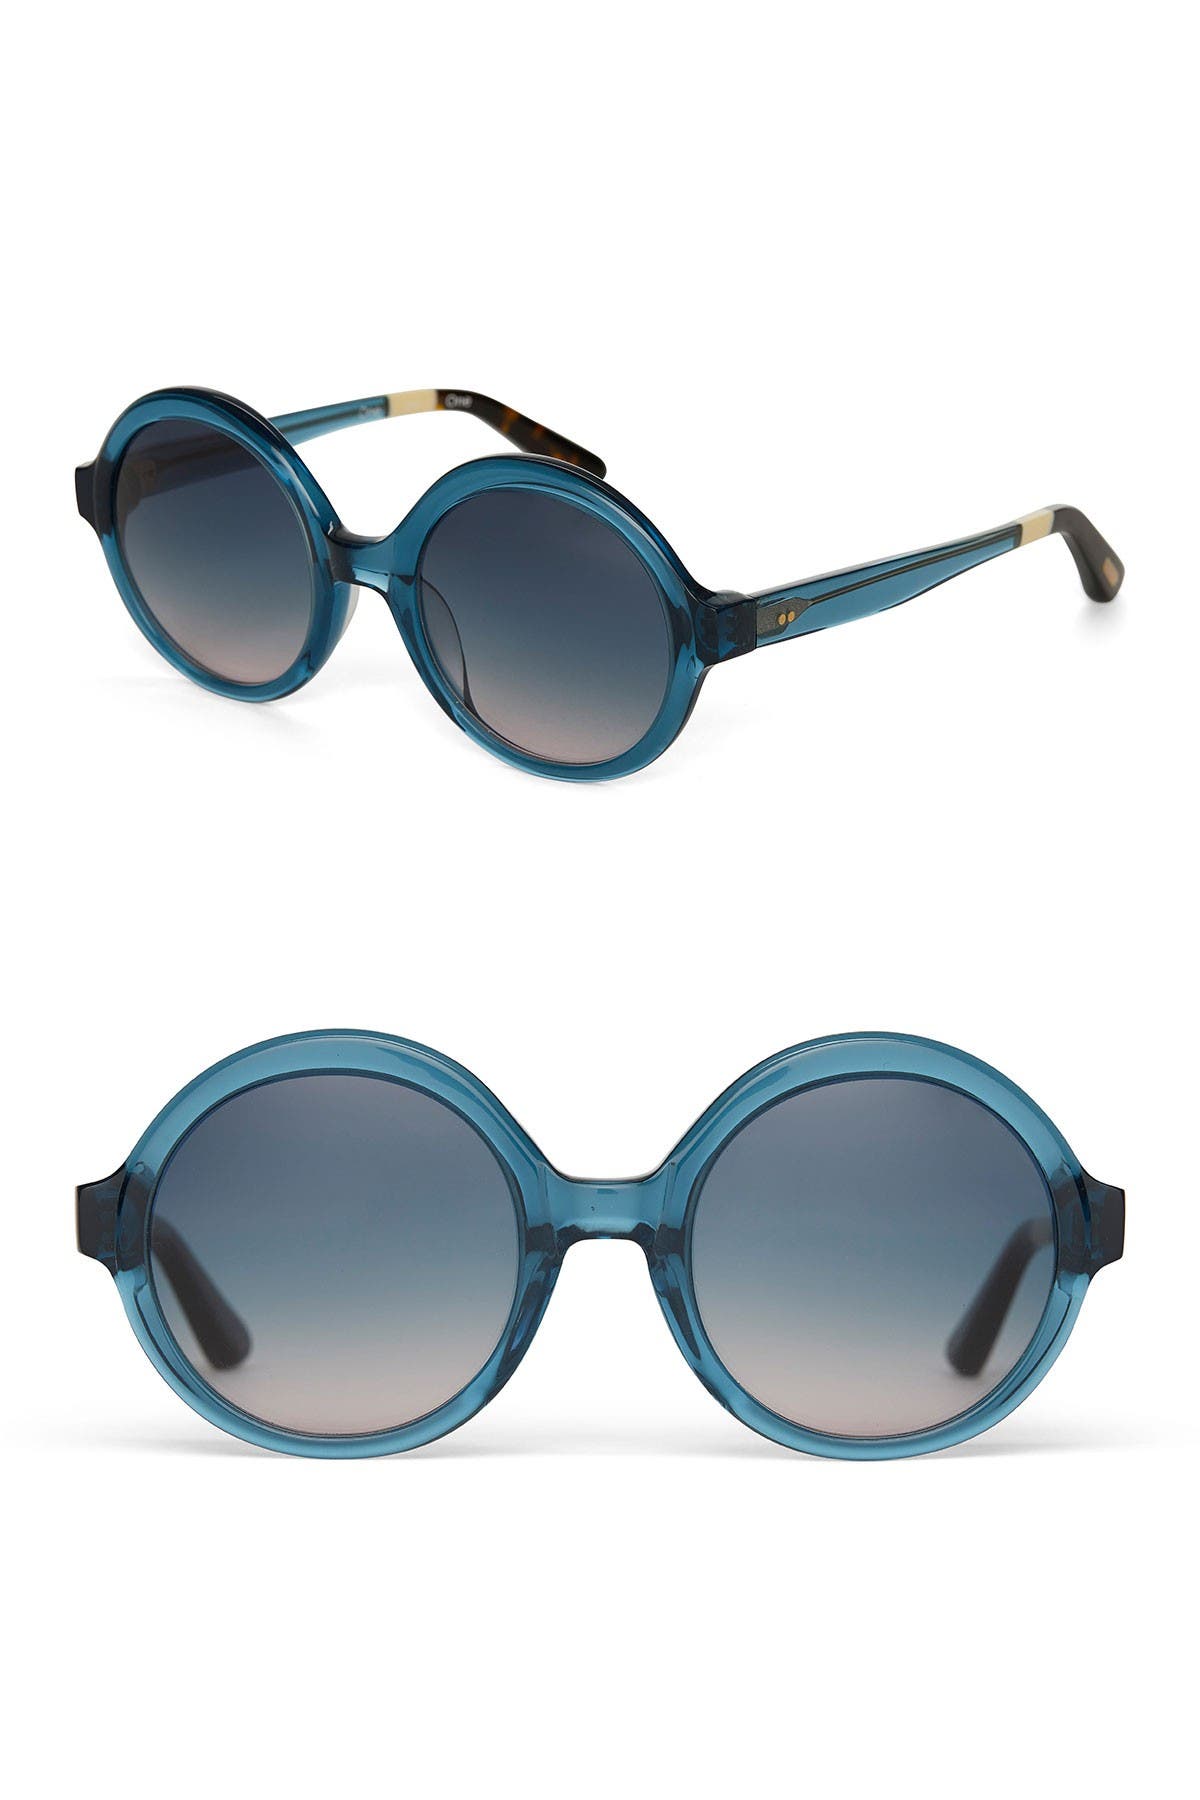 Toms Harlow 51mm Round Sunglasses In Medium Blue